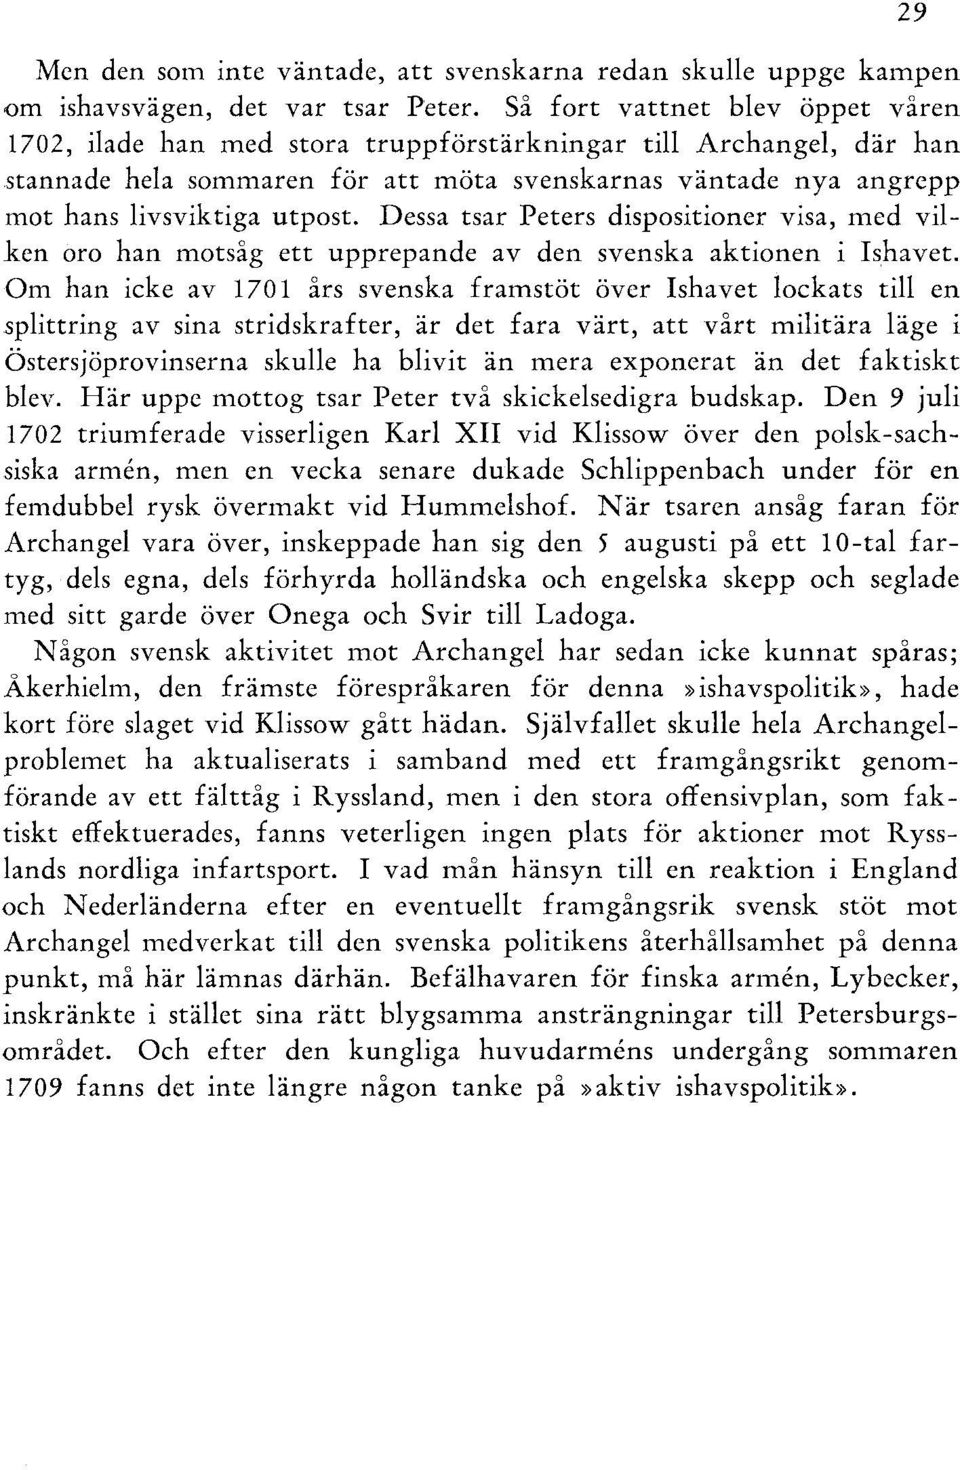 Dessa tsar Peters dispositioner visa, med vilken oro han motsåg ett upprepande av den svenska aktionen i I!lhavet.